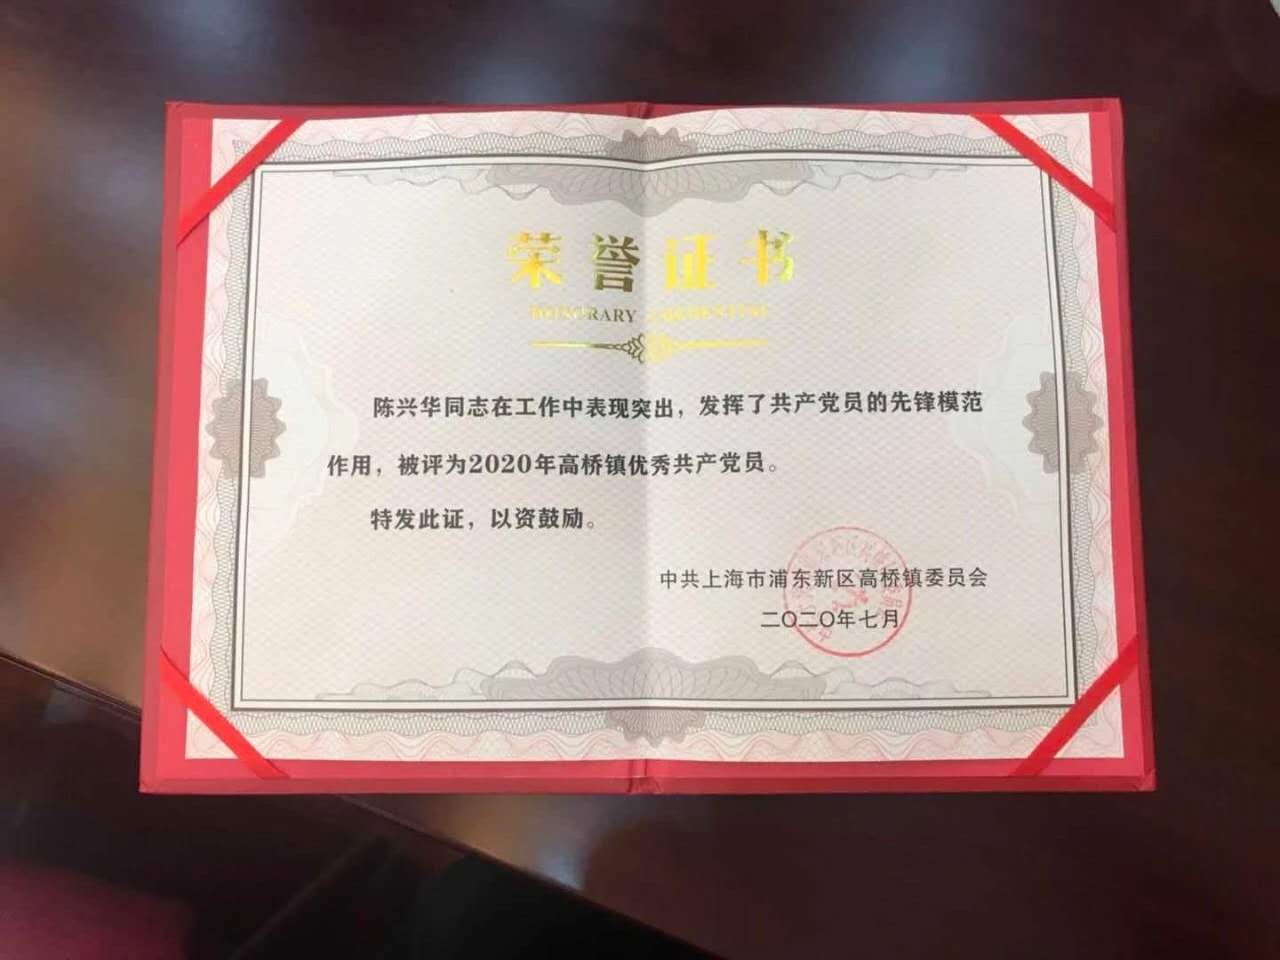 祝賀！上海遠方陳興華同志被評為2020年度優秀共產黨員